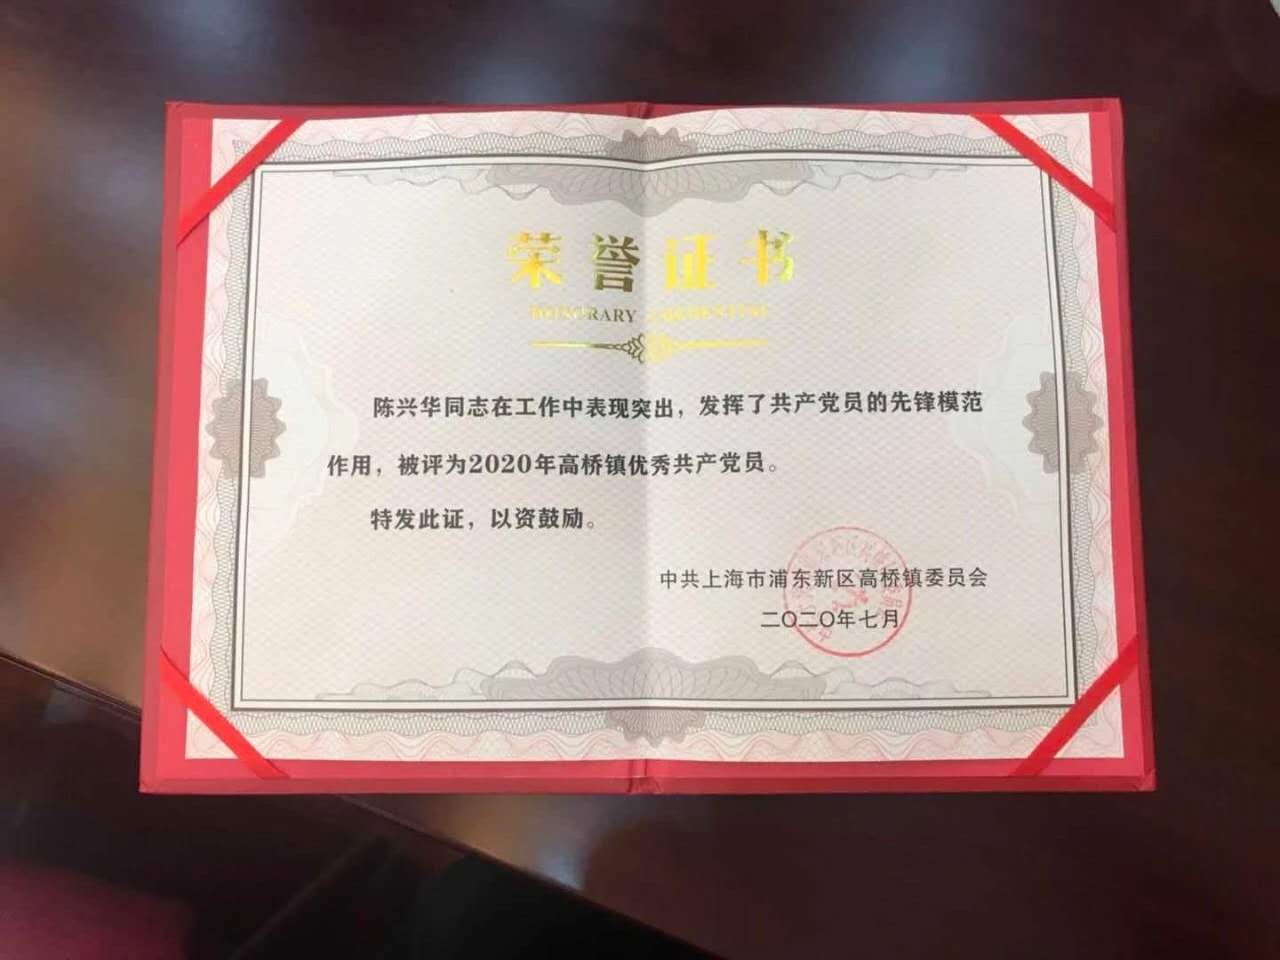 祝賀！上海遠方陳興華同志被評為2020年度優秀共產黨員